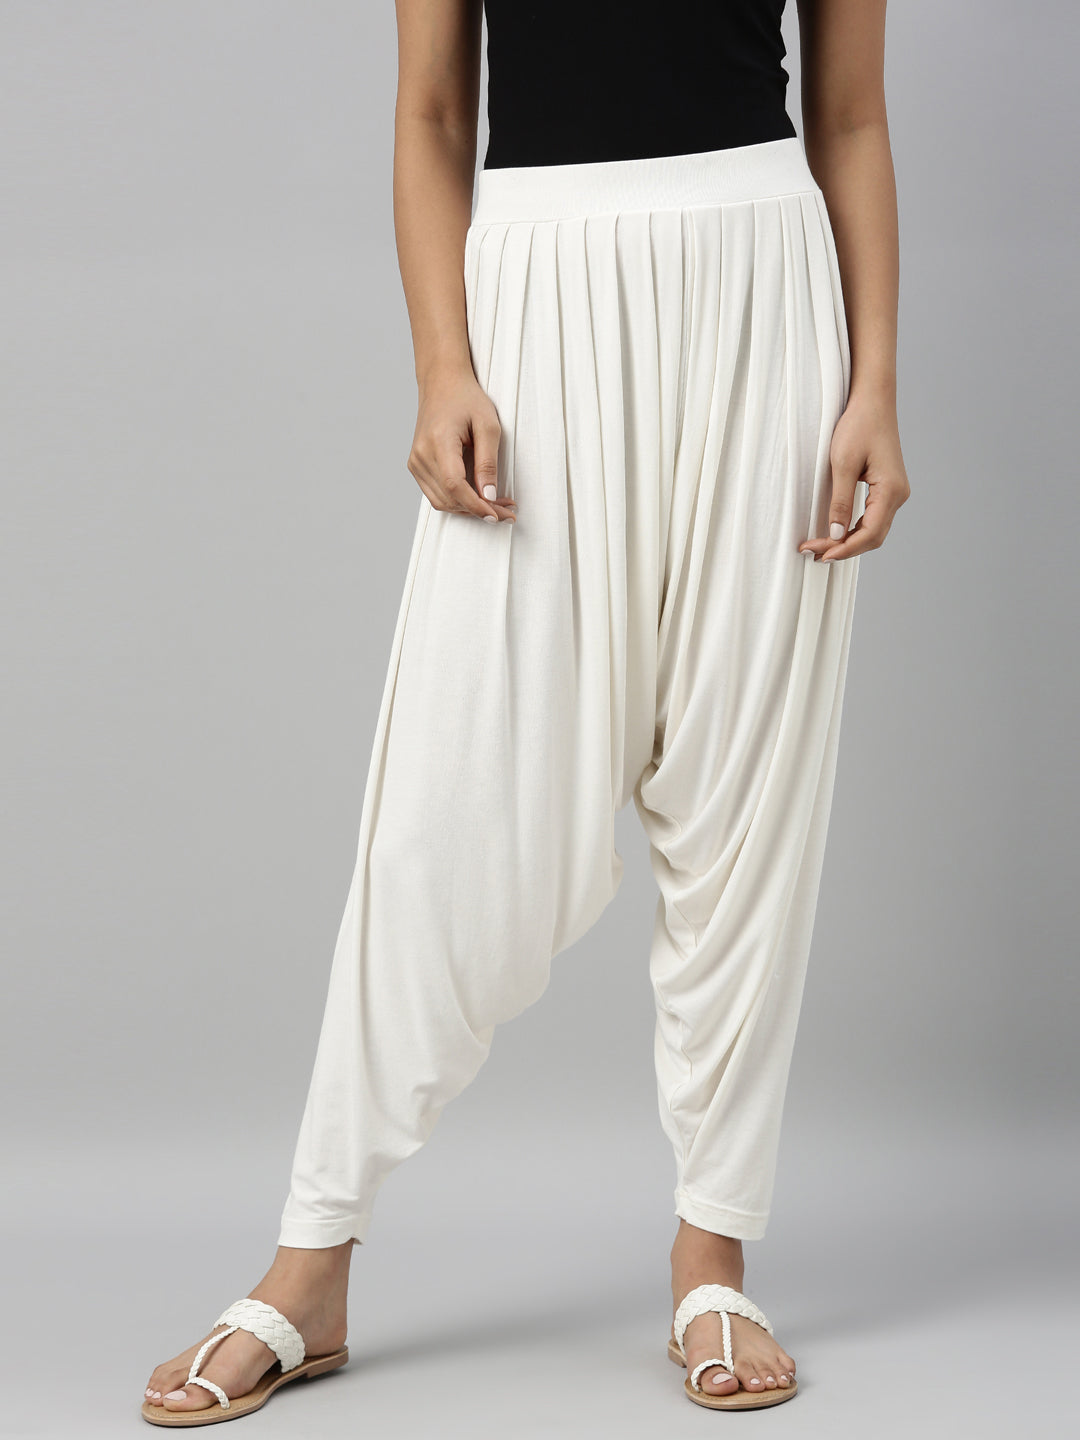 Beautiful Women Cotton Patiala Salwar Pants Regular Fit Girl Salwar Pajamas  Gray | eBay